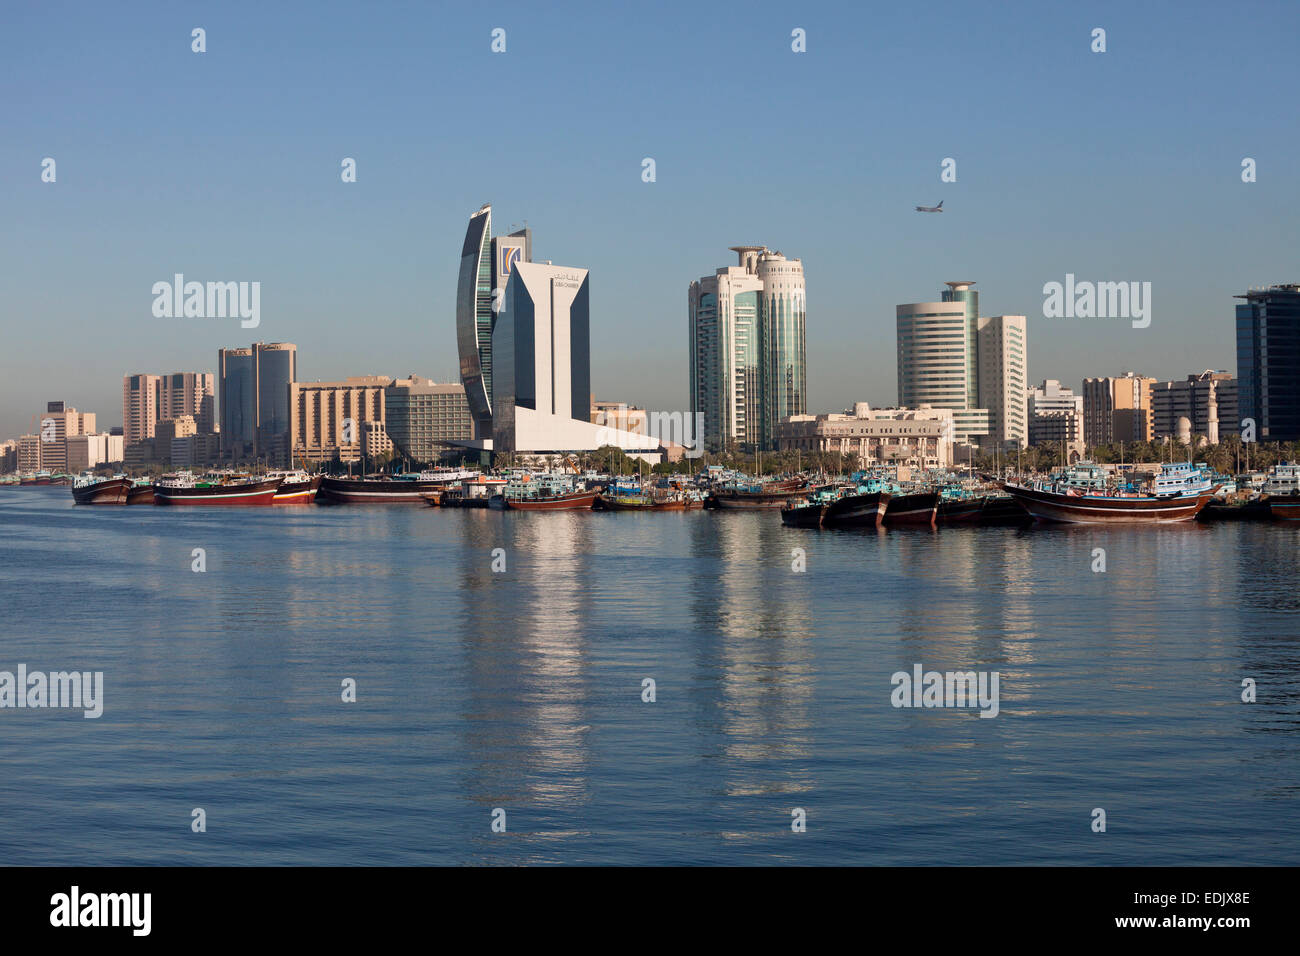 Dhau-Hafen und Wolkenkratzer auf dem Creek, Dubai, Emirat von Dubai, Vereinigte Arabische Emirate, Asiatisch, asiatisch Stockfoto